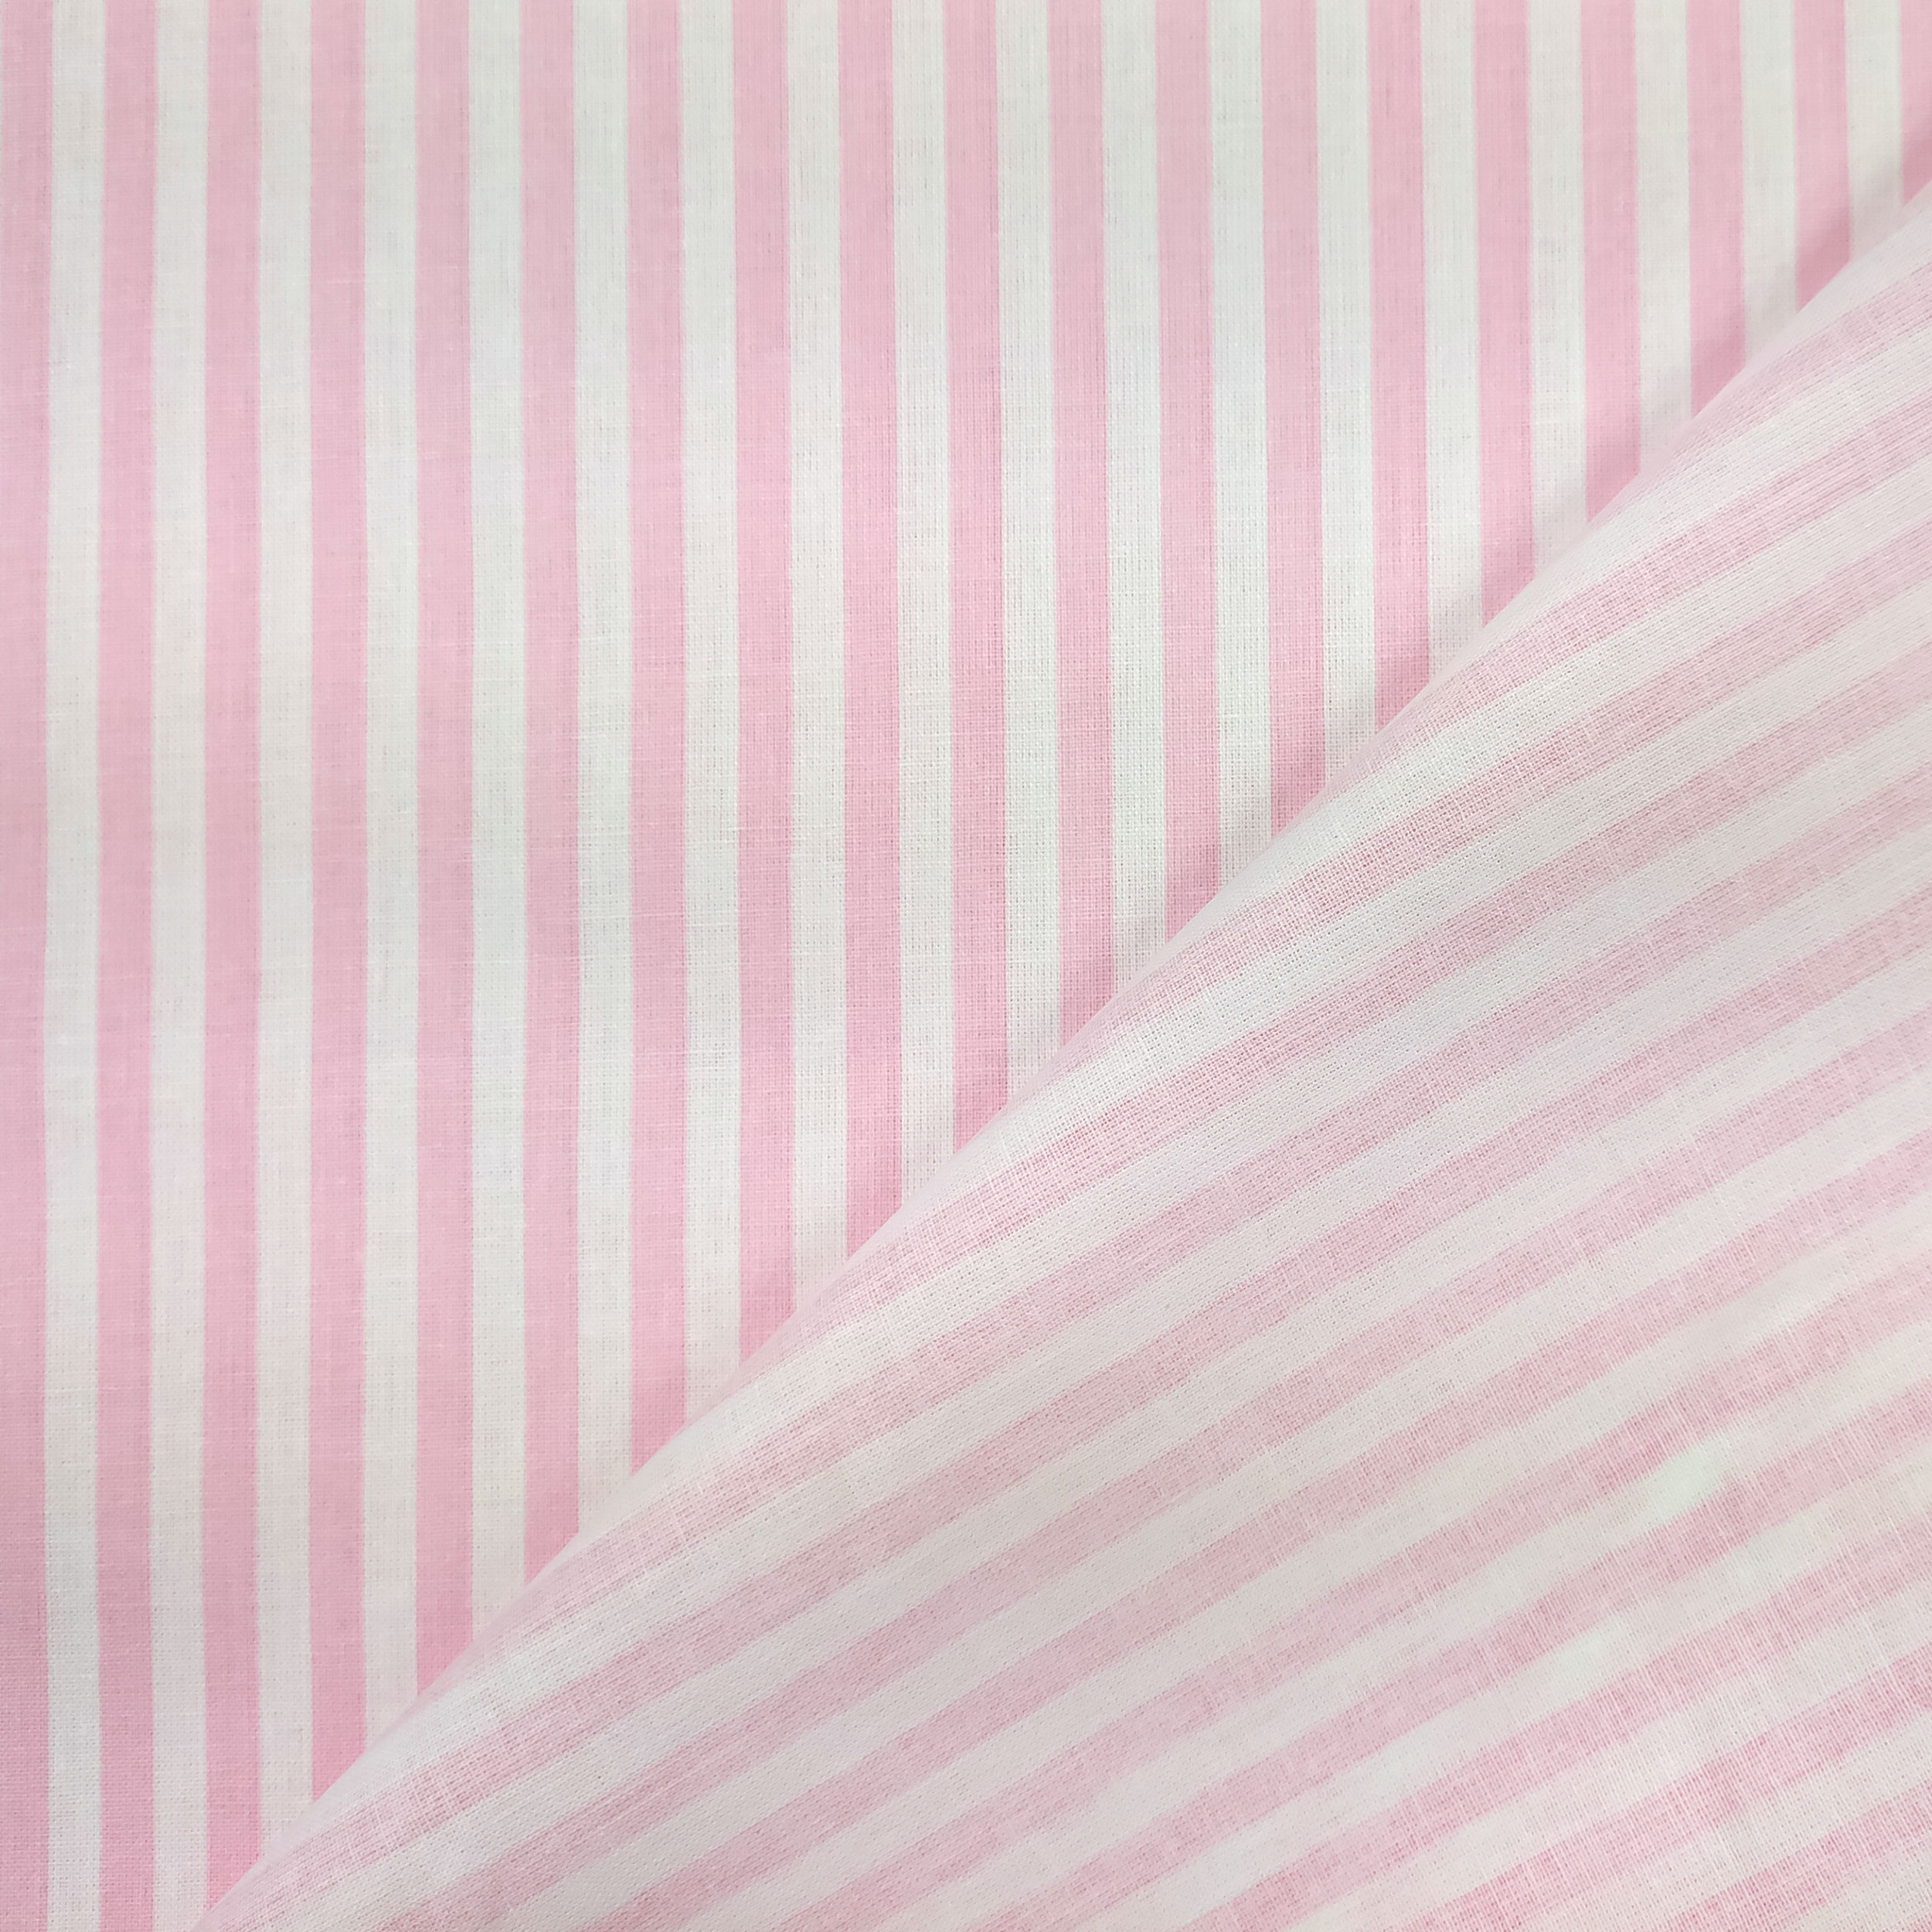 tessuto in cotone righe rosa chiaro